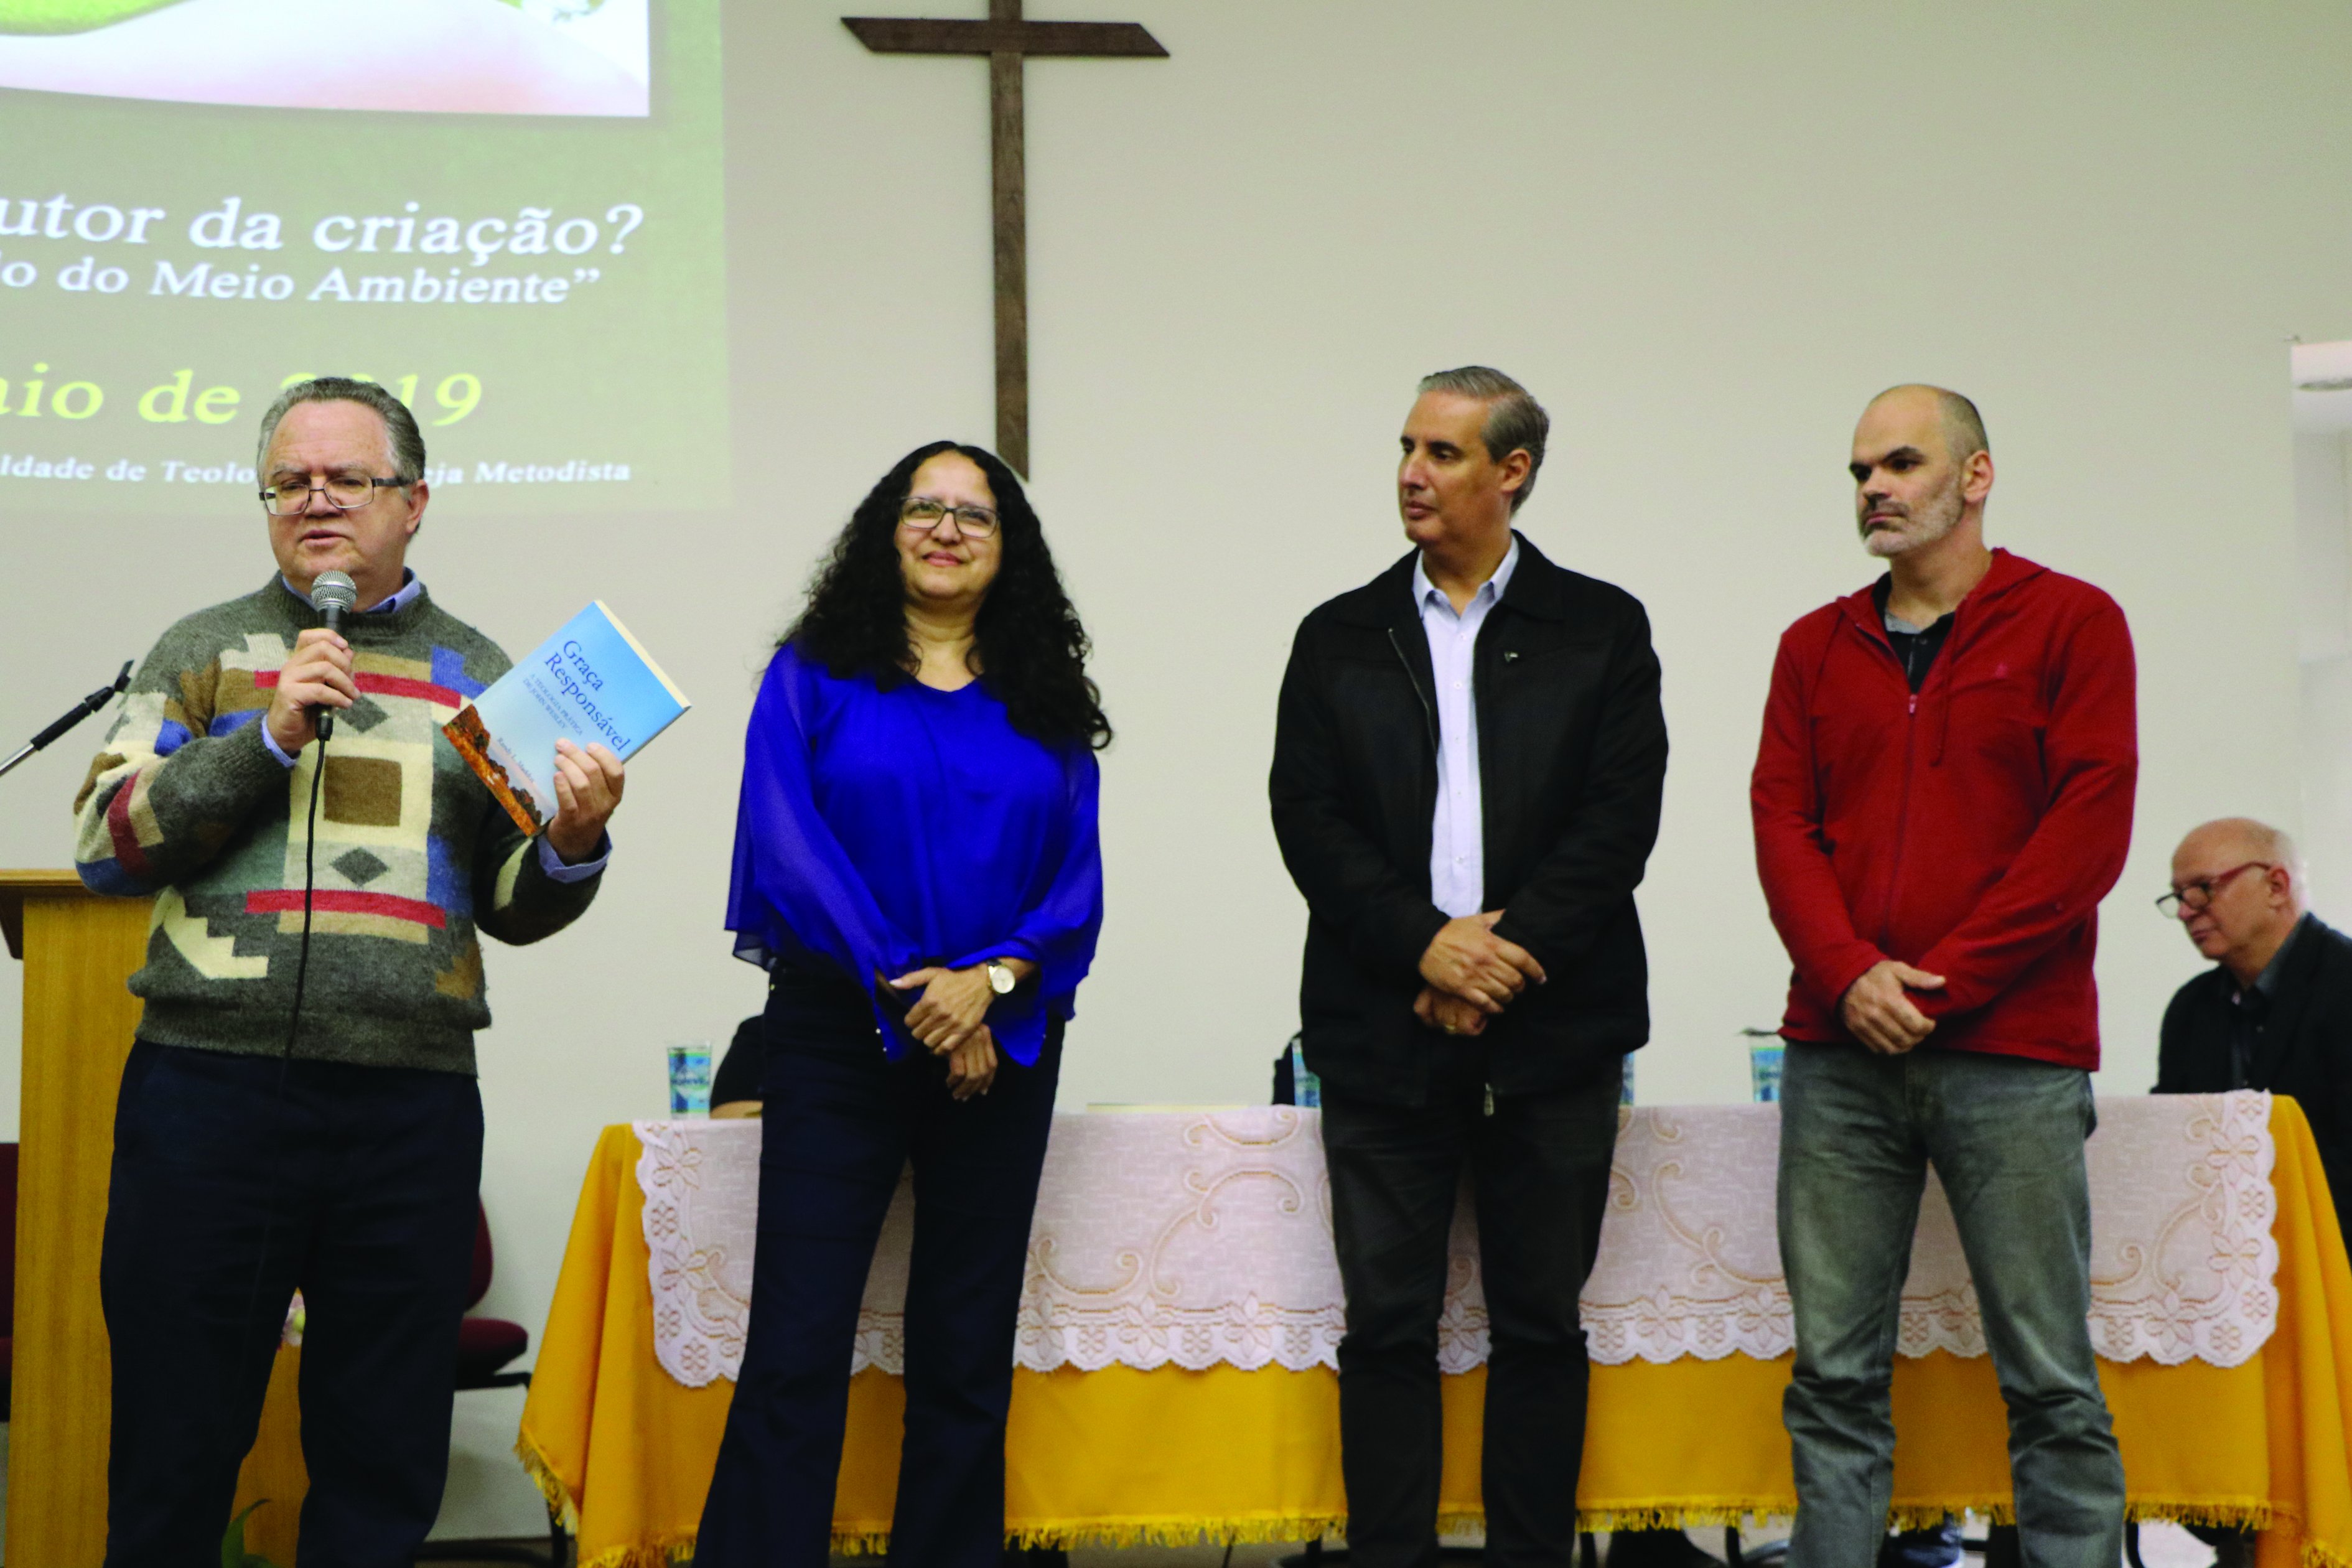 Angular Editora integra Conferência na 68ª Semana Wesleyana, junto com a SBB e a Fateo